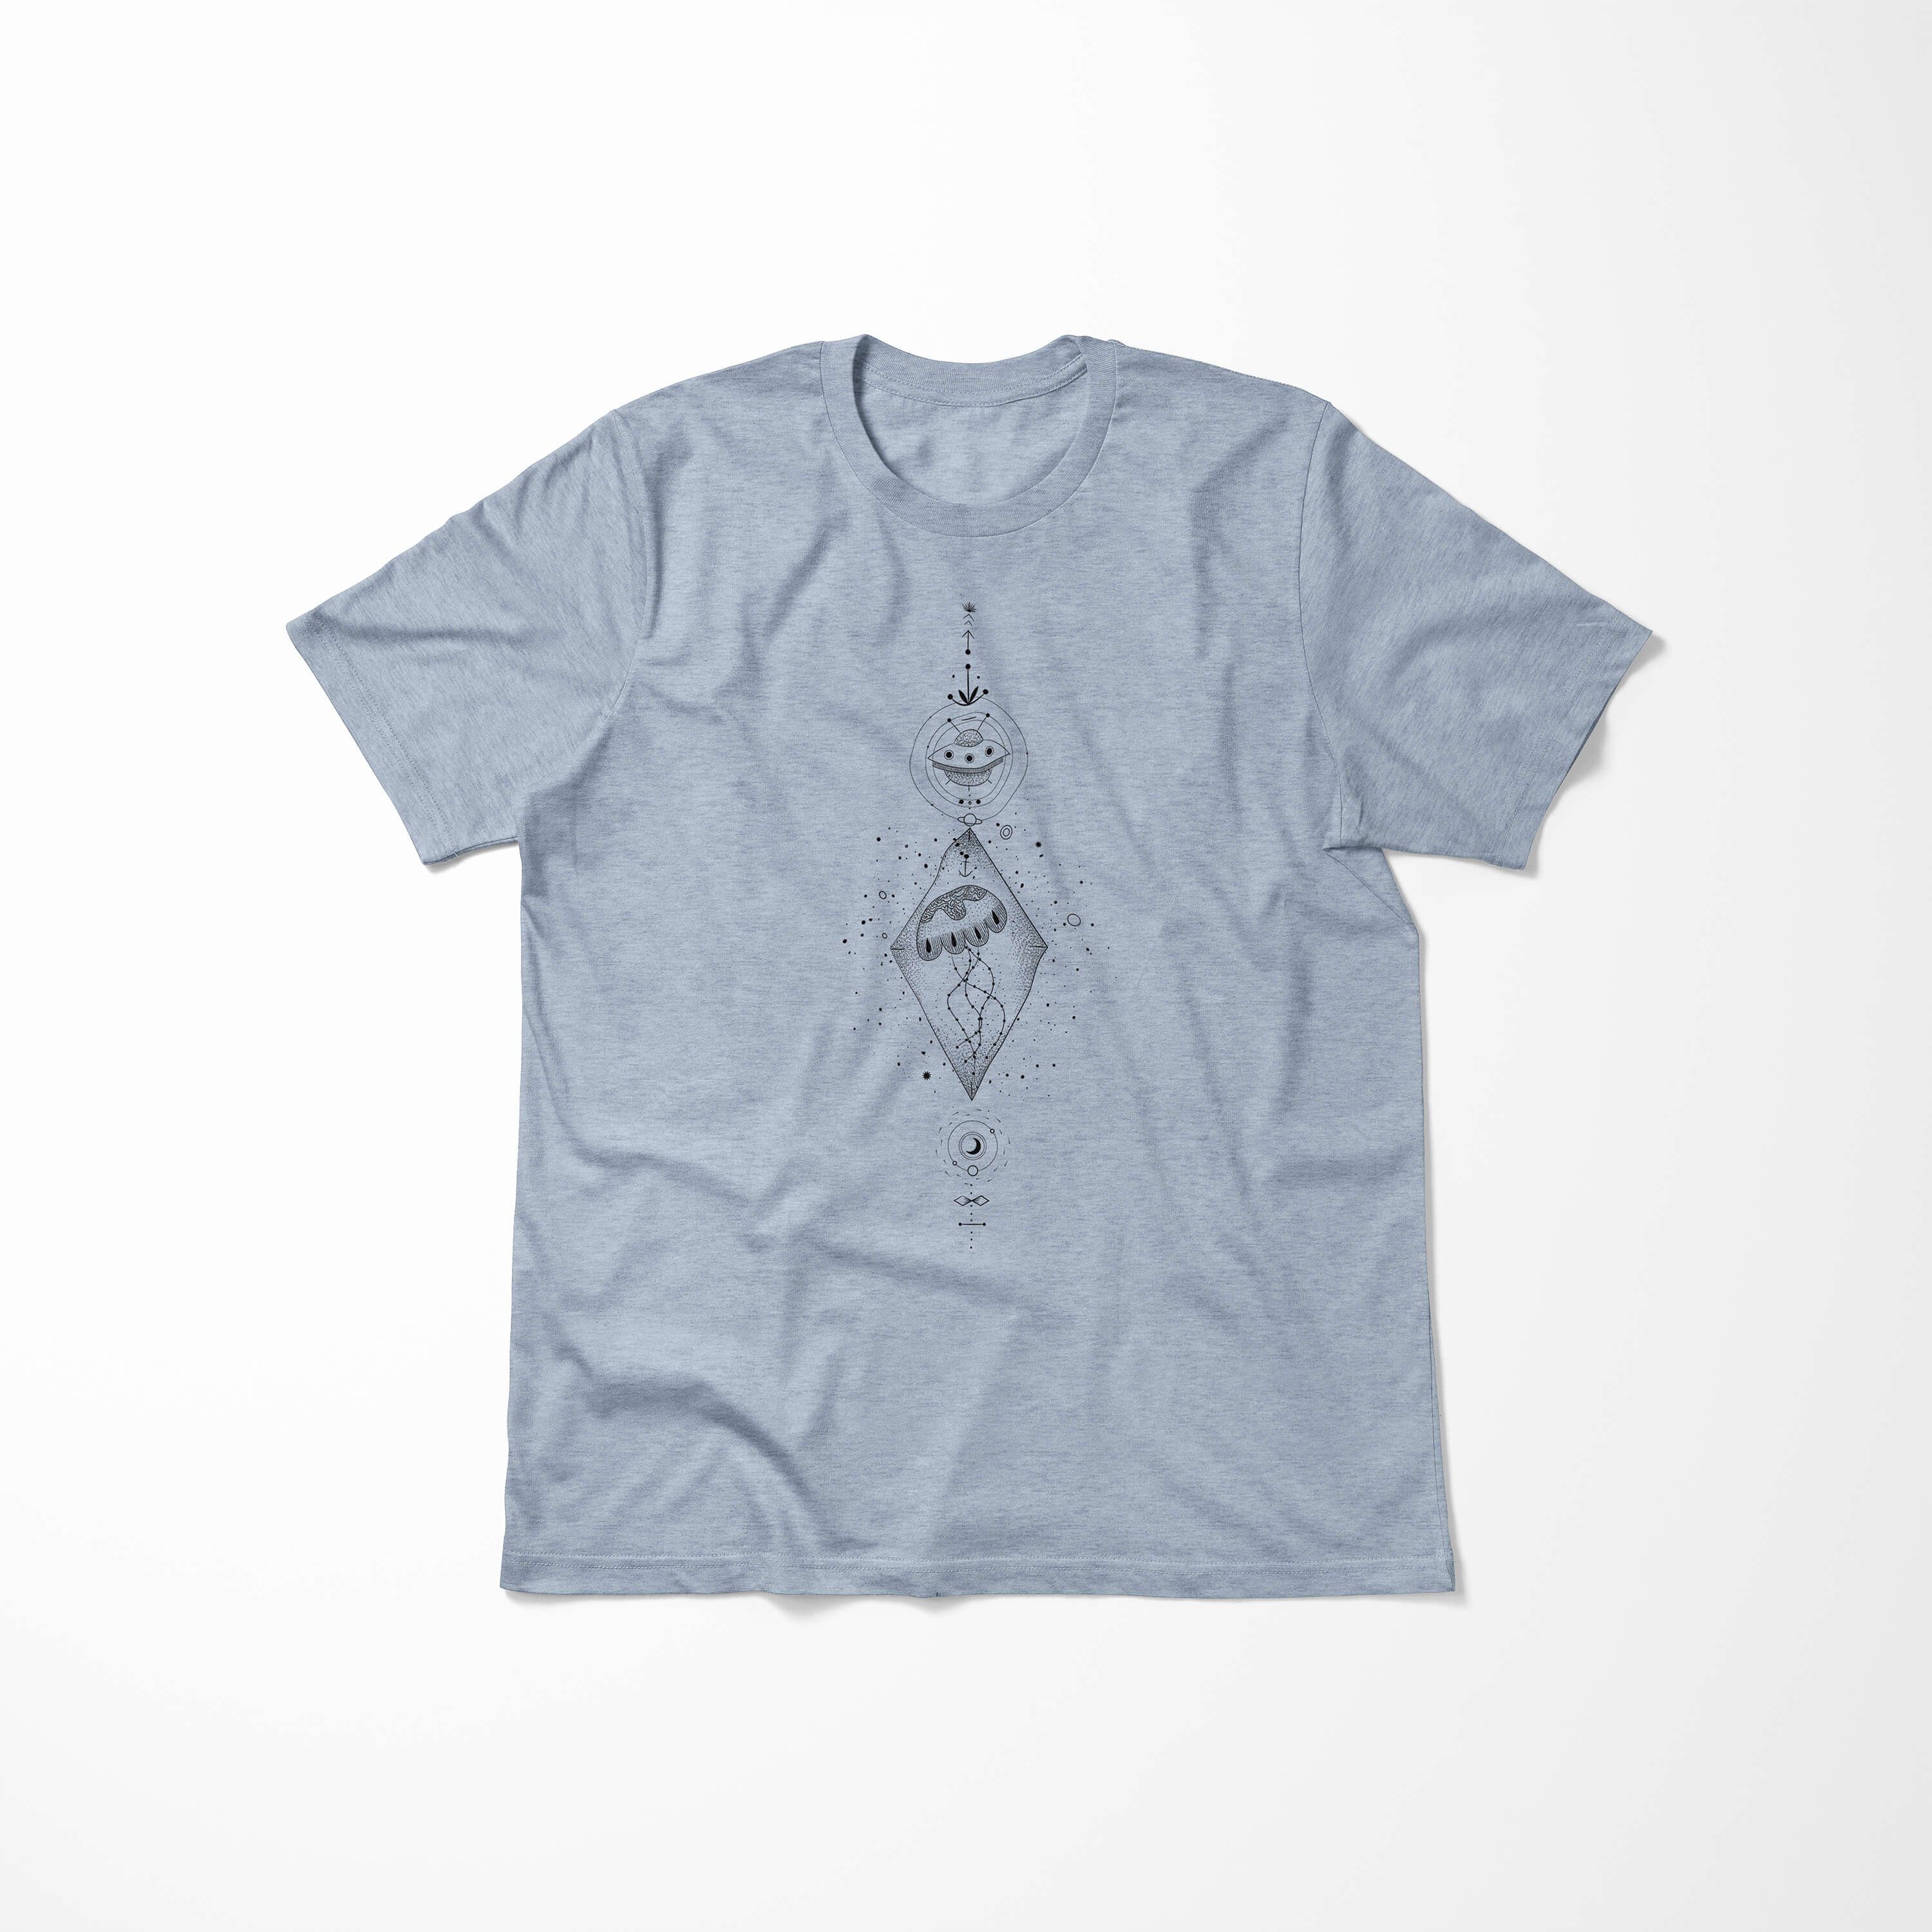 Sinus Art T-Shirt angenehmer T-Shirt Tragekomfort No.0059 Alchemy Symbole Denim Struktur Stonewash Serie Premium feine